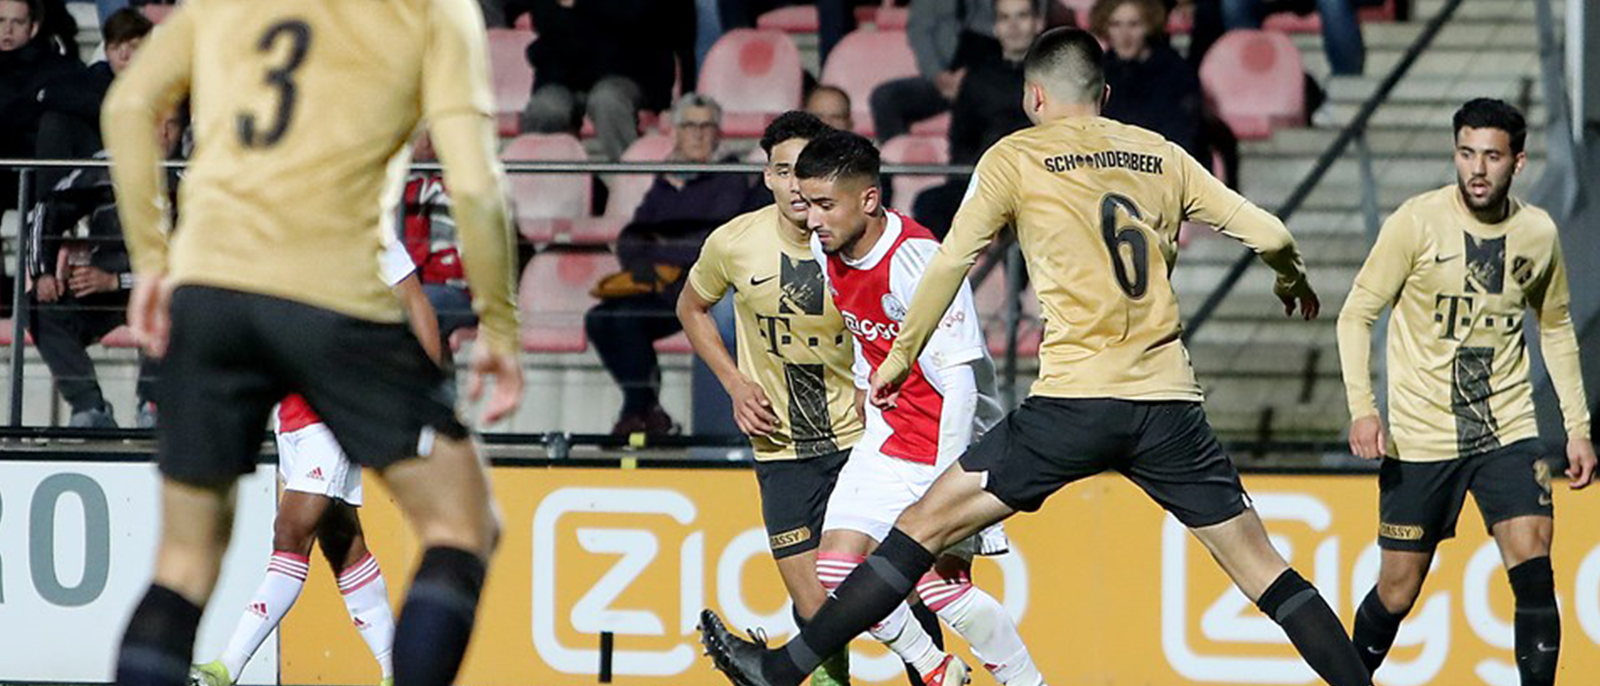 Jong FC Utrecht verliest van Jong Ajax